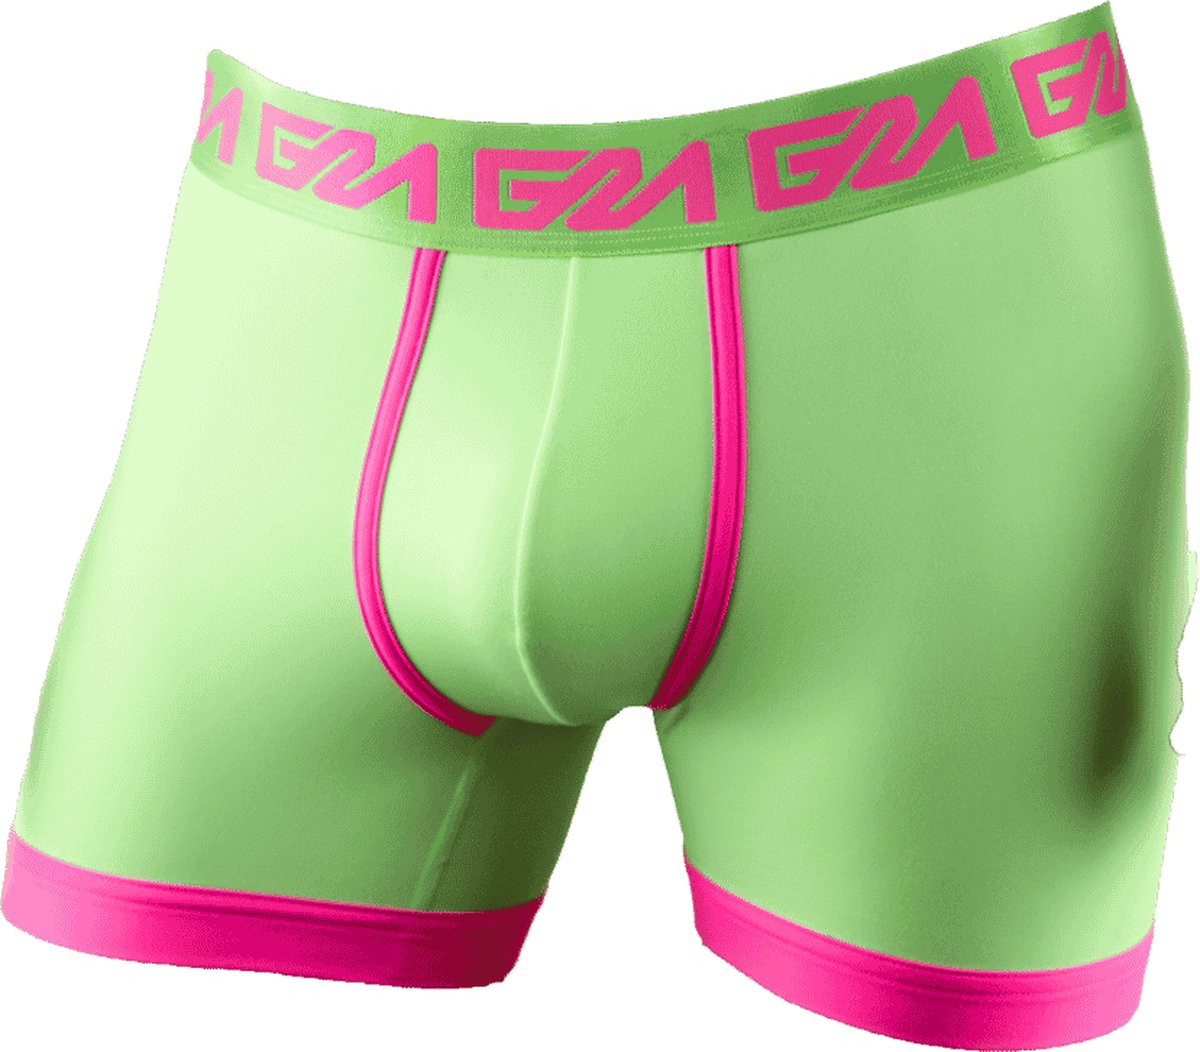 Garçon LINCOLN Boxershort - MAAT M - Heren Ondergoed - Boxershort voor Man - Mannen Boxershort